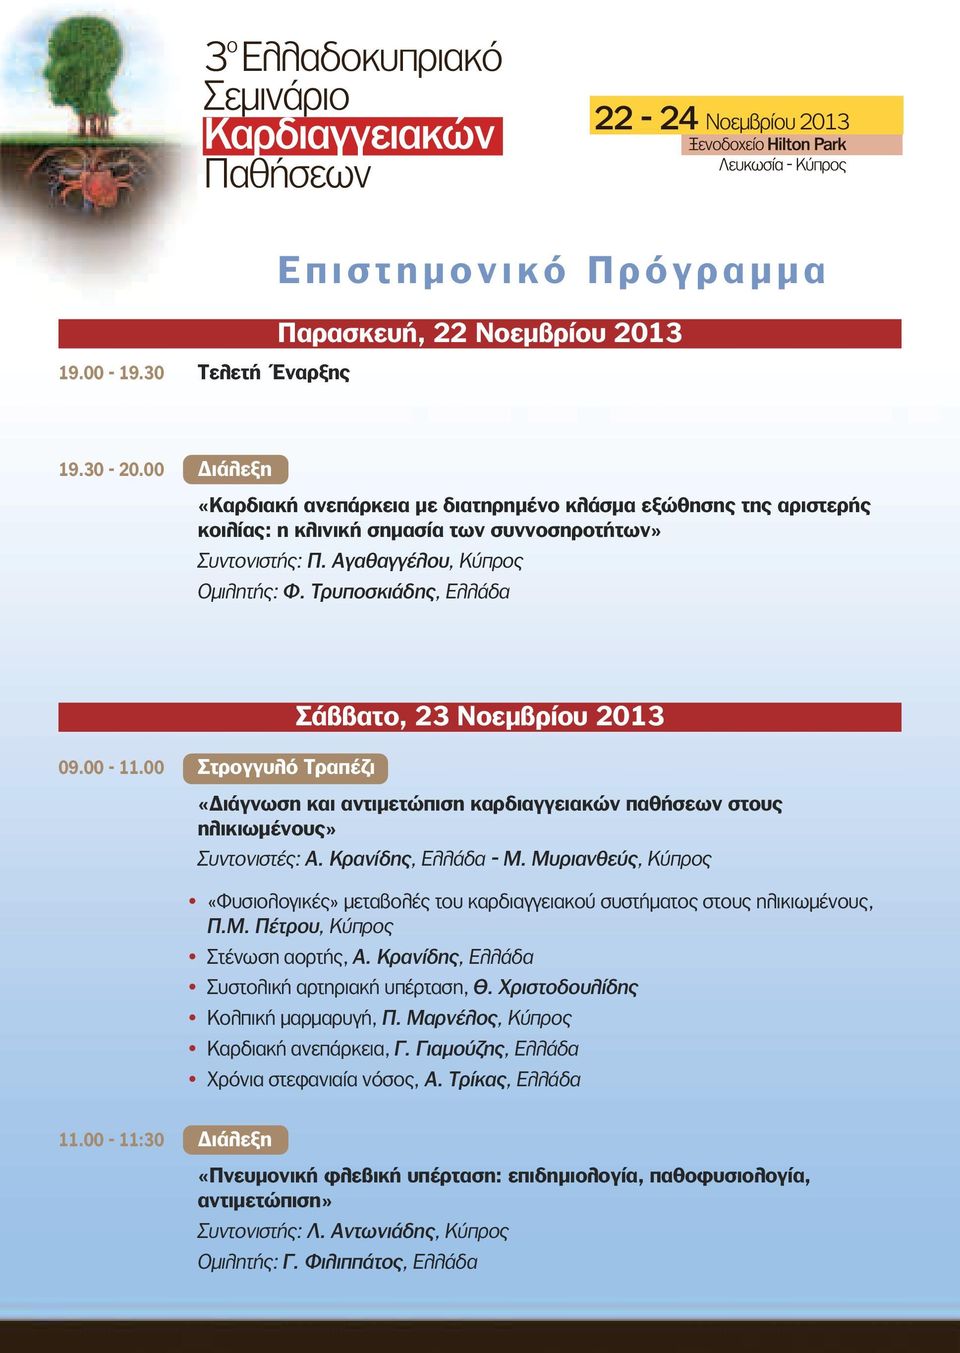 00-11.00 Στρογγυλό Tραπέζι Σάββατο, 23 Νοεμβρίου 2013 «Διάγνωση και αντιμετώπιση καρδιαγγειακών παθήσεων στους ηλικιωμένους» Συντονιστές: Α. Κρανίδης, Ελλάδα - Μ.